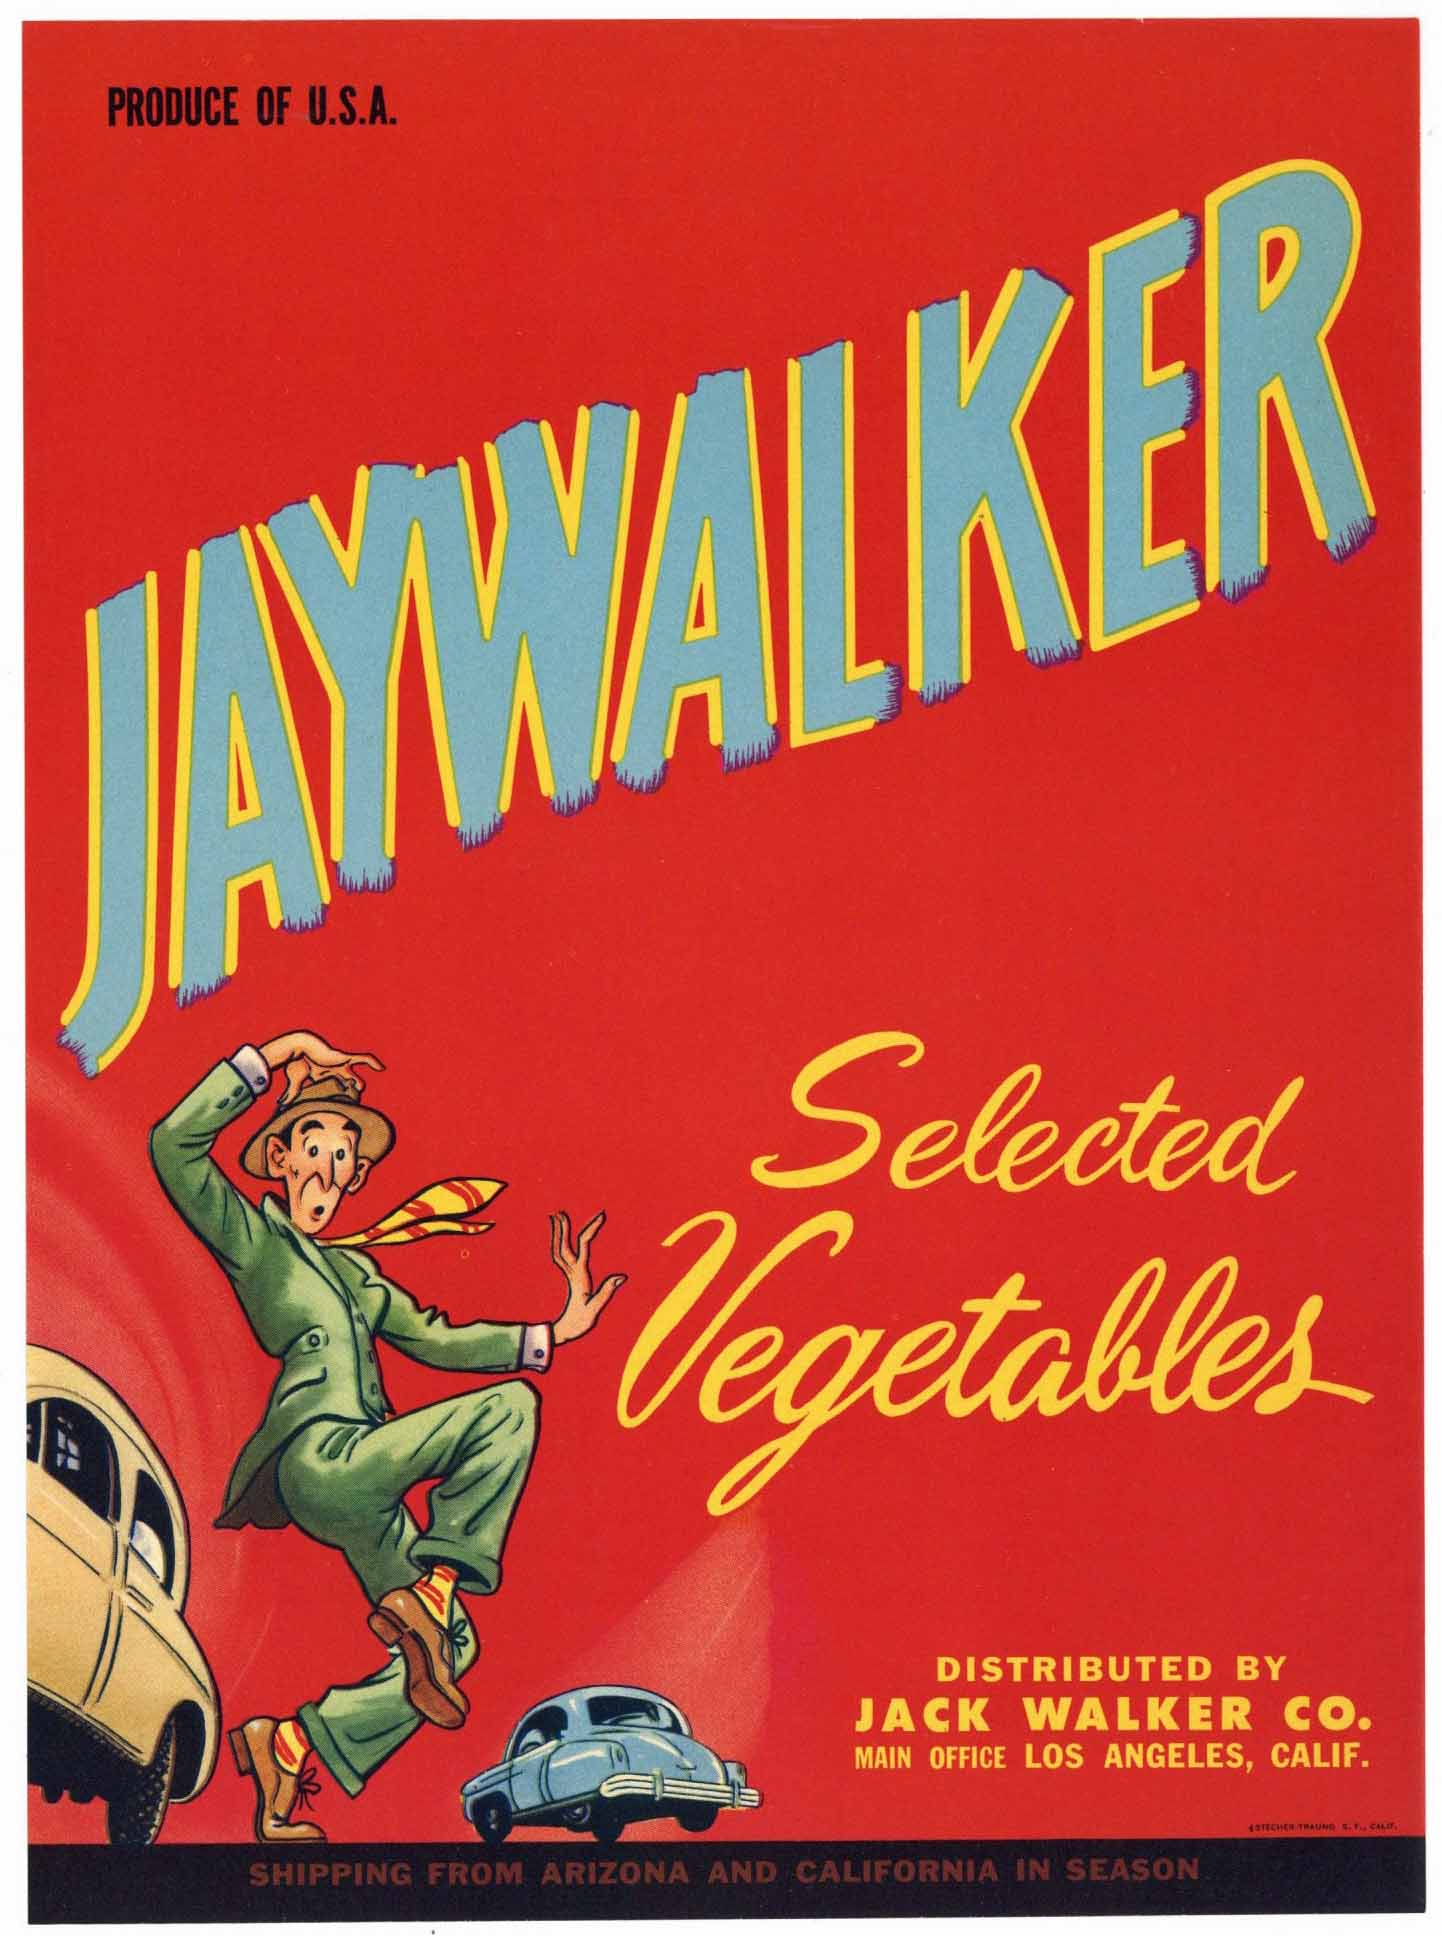 Jaywalker Brand Vintage Vegetable Crate Label